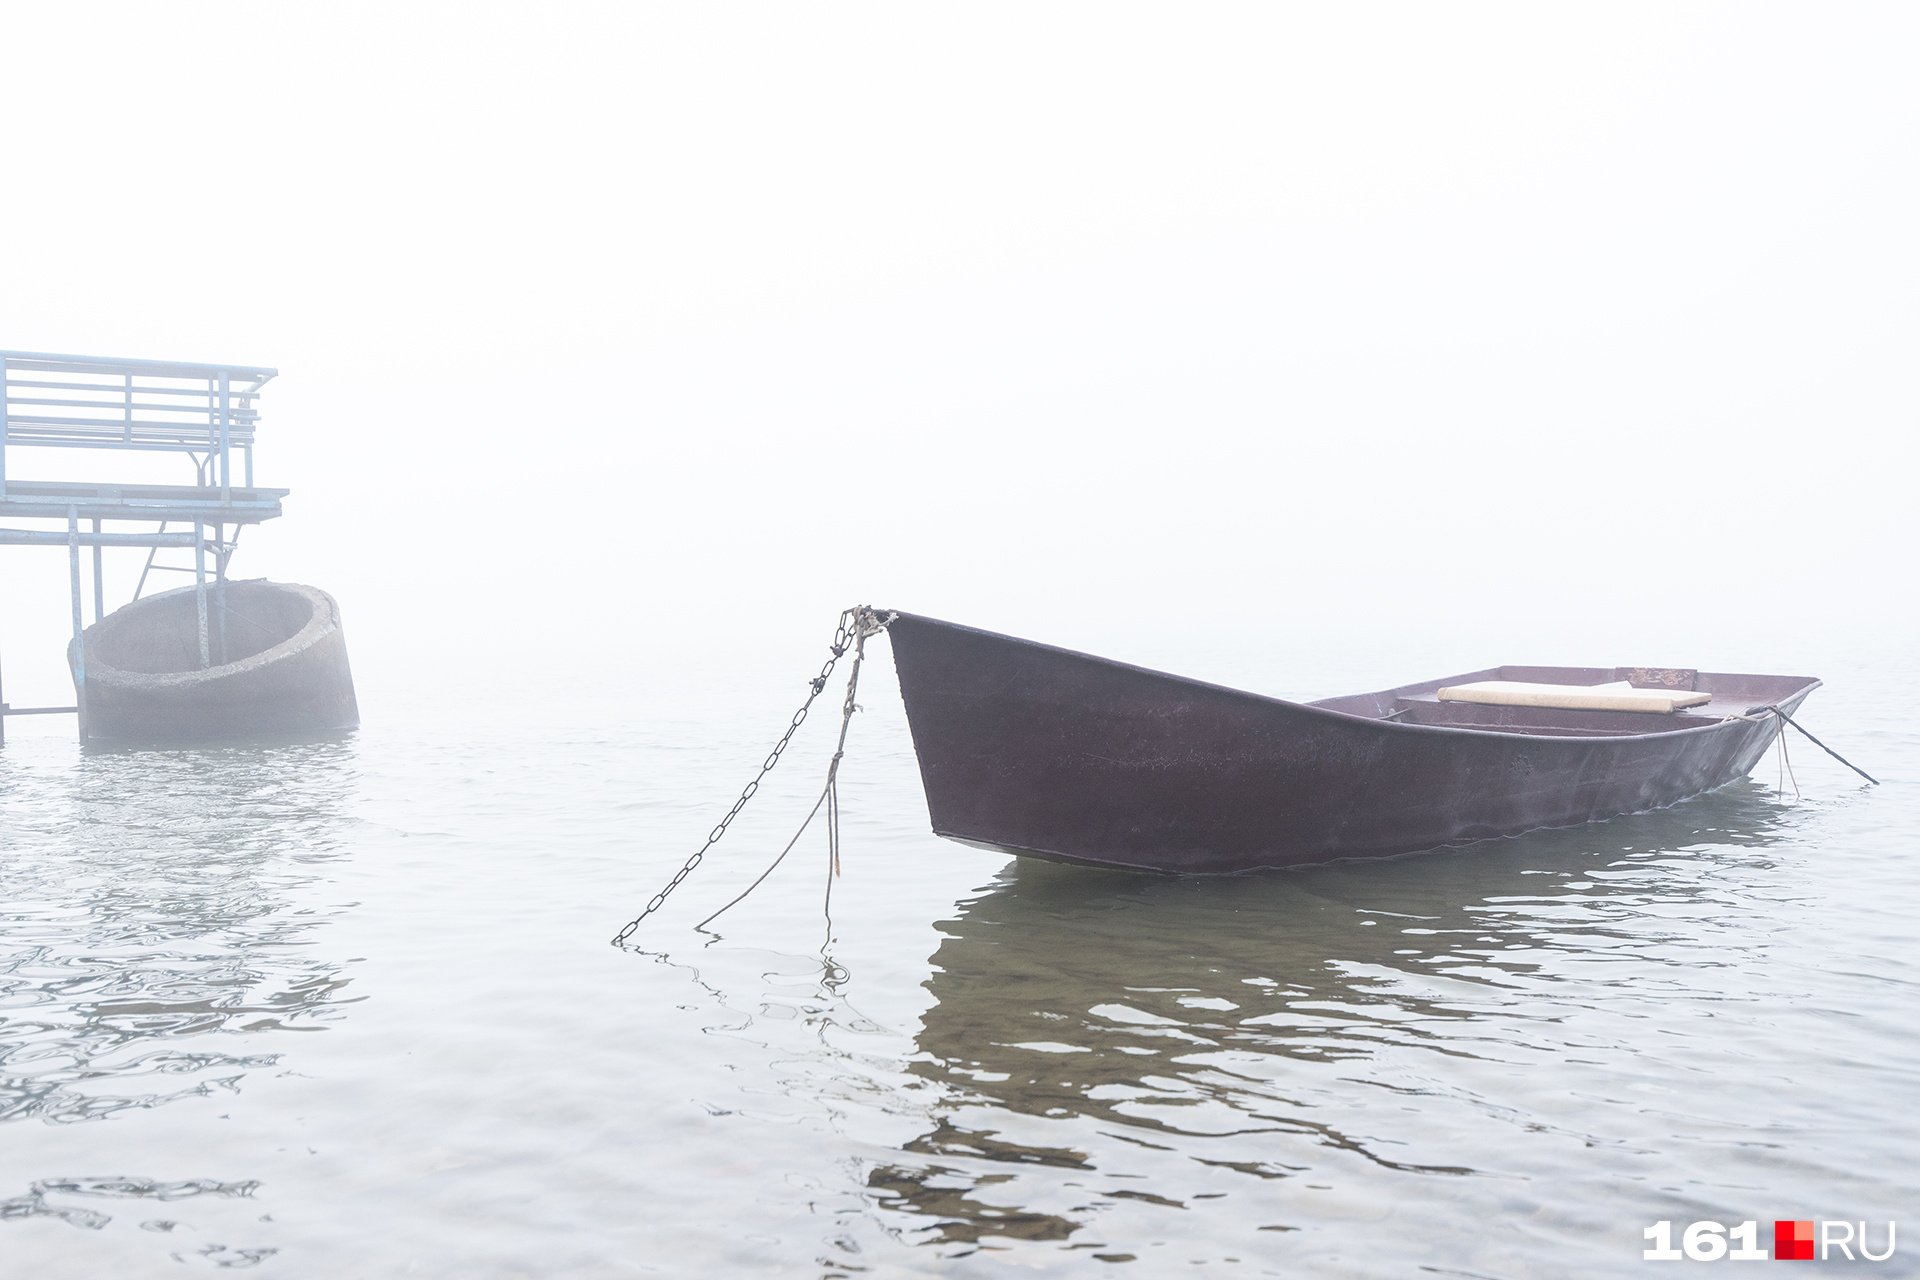 Одинокая лодка колышется на донских волнах